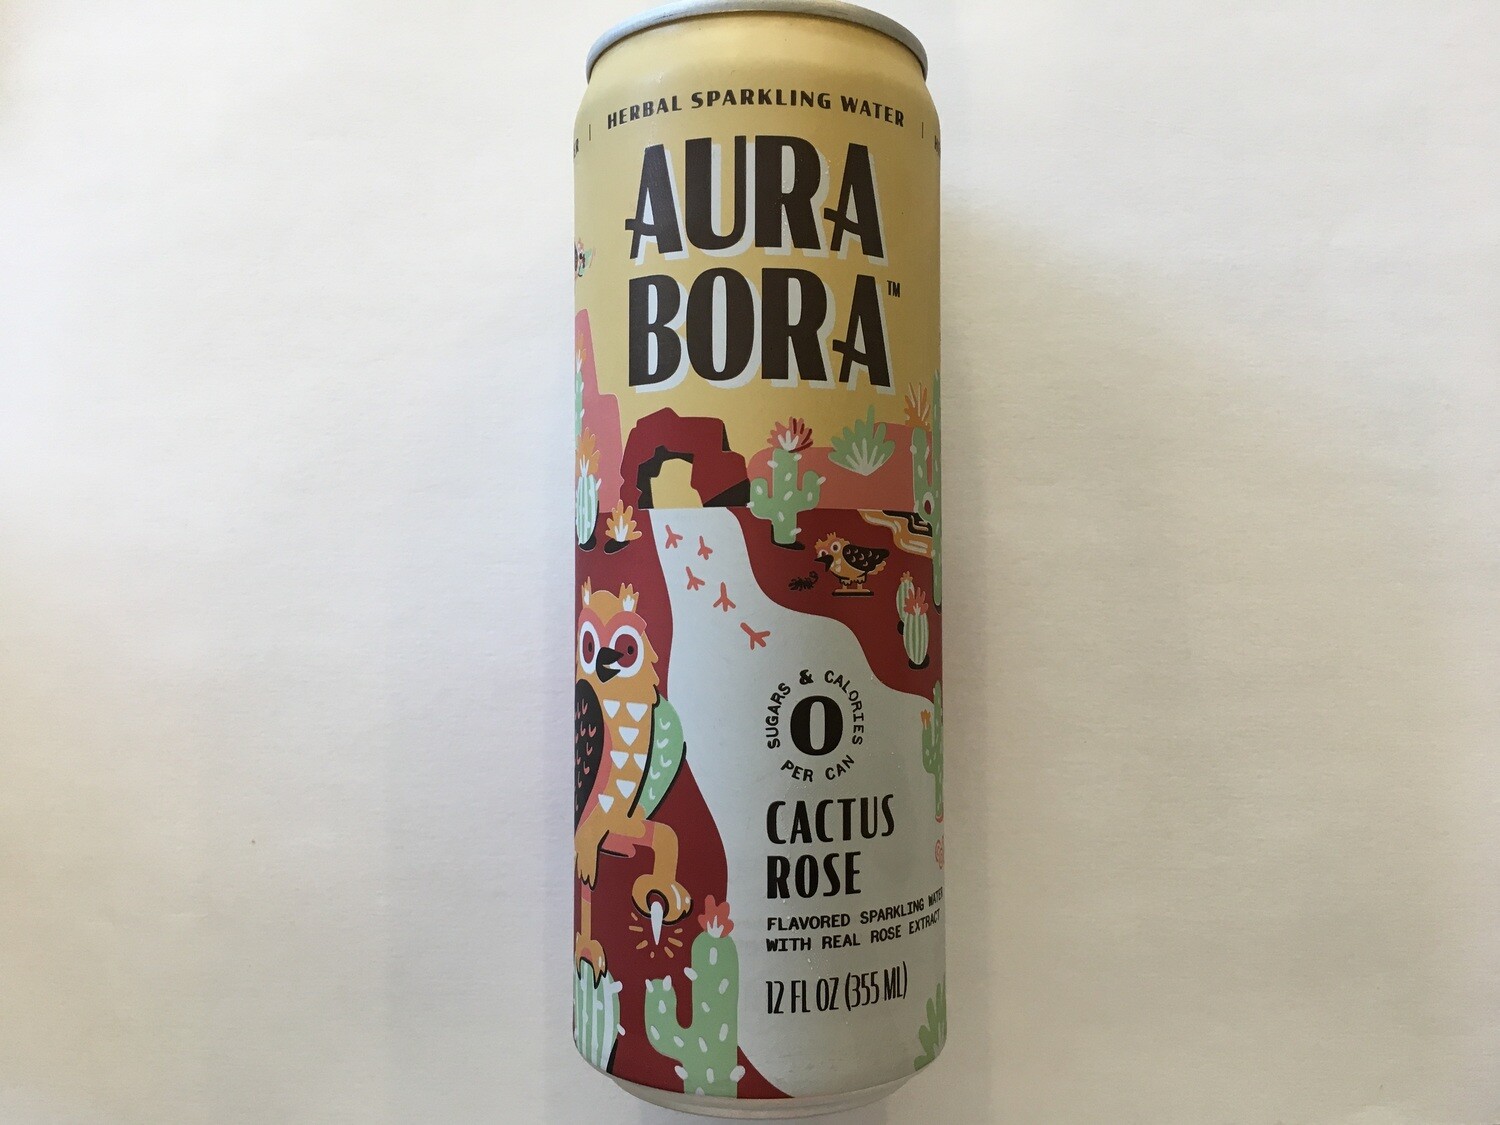 Beverage / Water / Aura Bora Cactus Rose, 12 oz